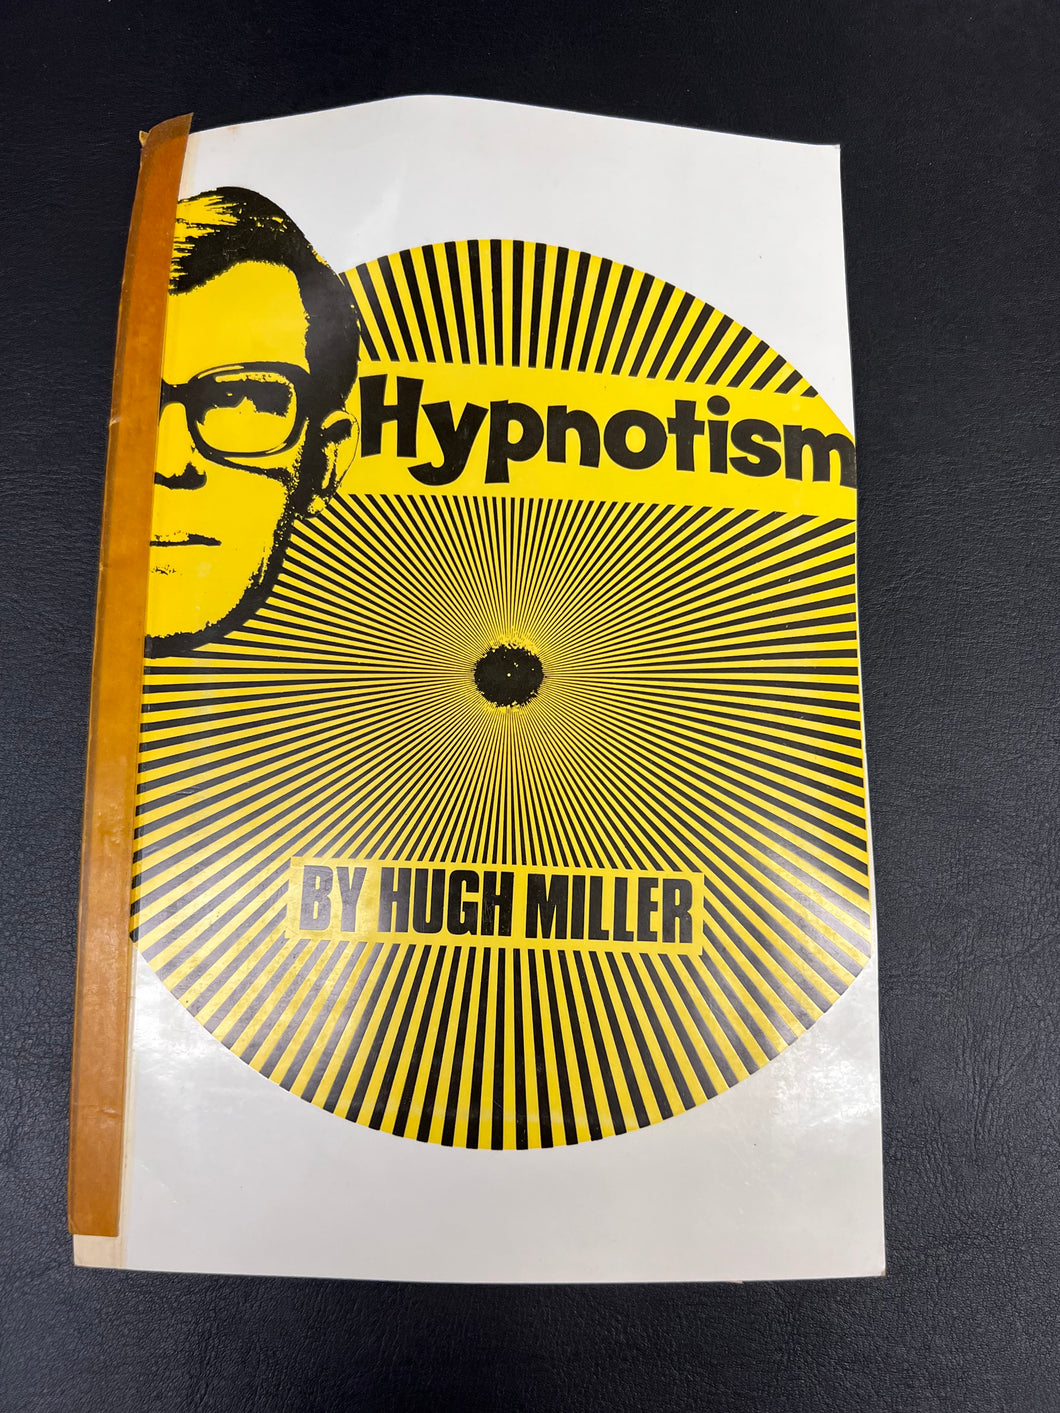 Hypnotism by Hugh Miller